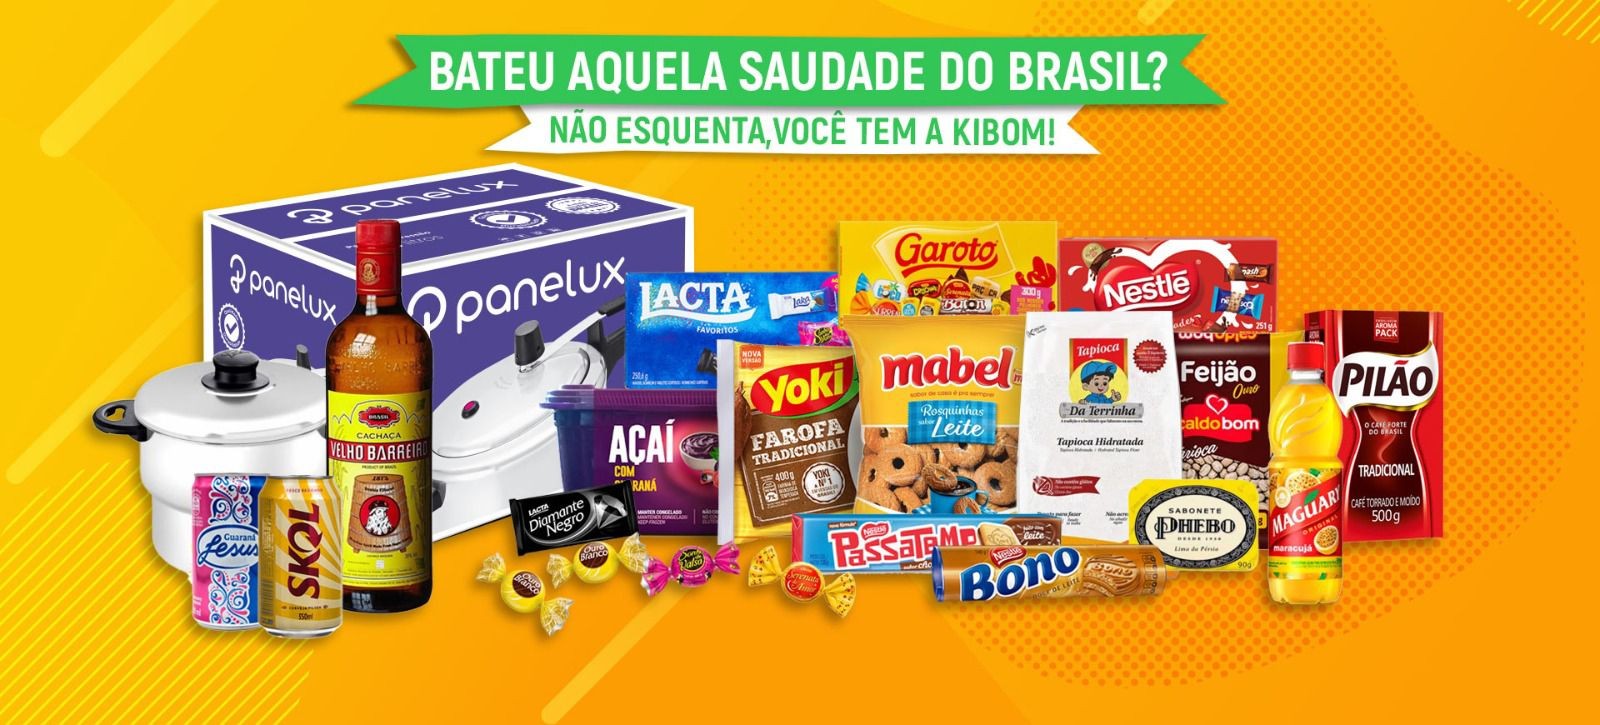 Productos Brasileños - Tienda Virtual